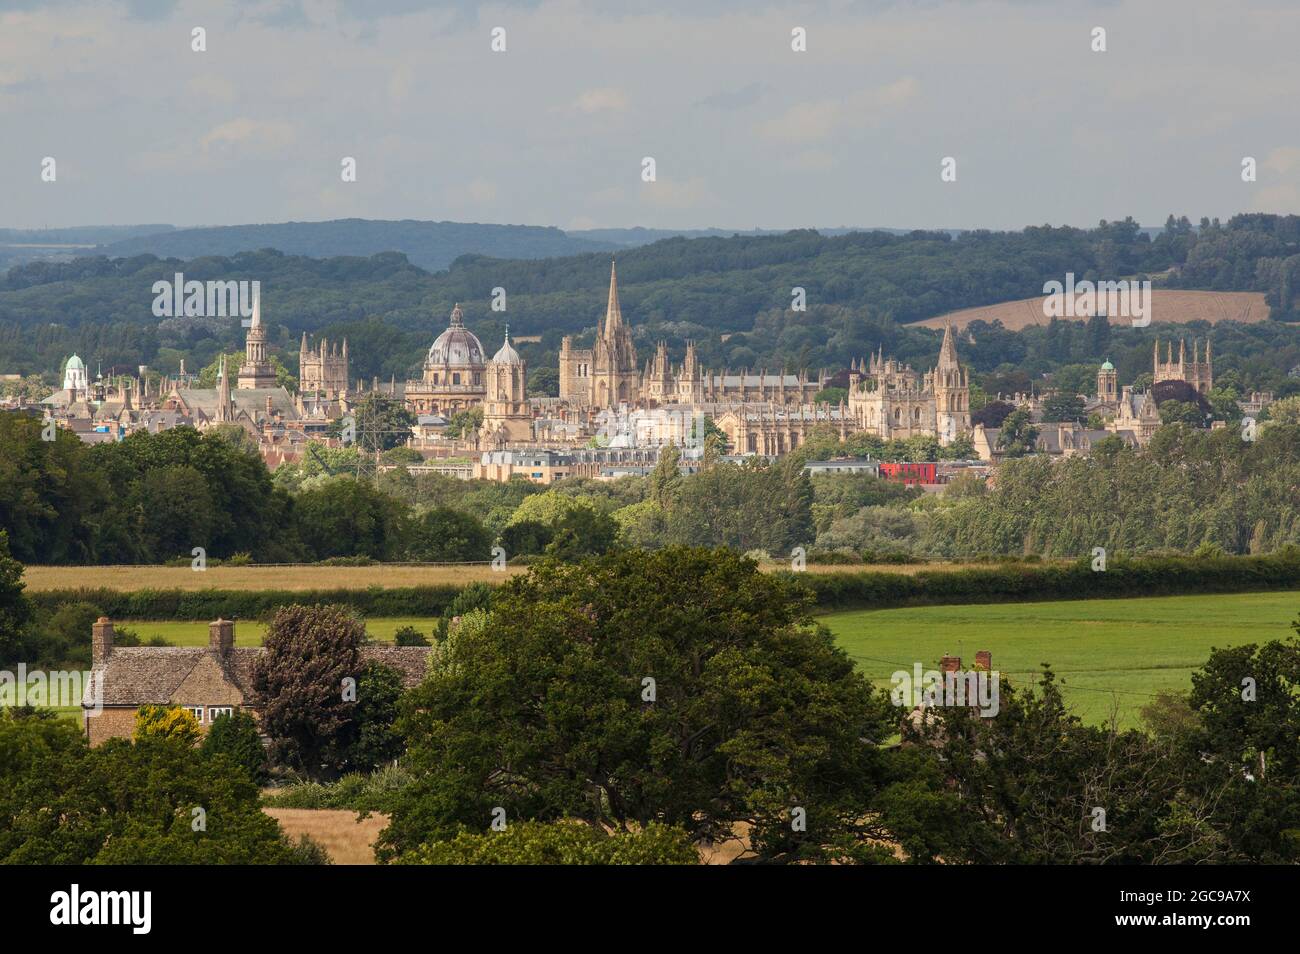 Veduta aerea dello skyline delle sognanti guglie dell'Università di Oxford, in Inghilterra, prese dall'alto dei terreni agricoli locali Foto Stock